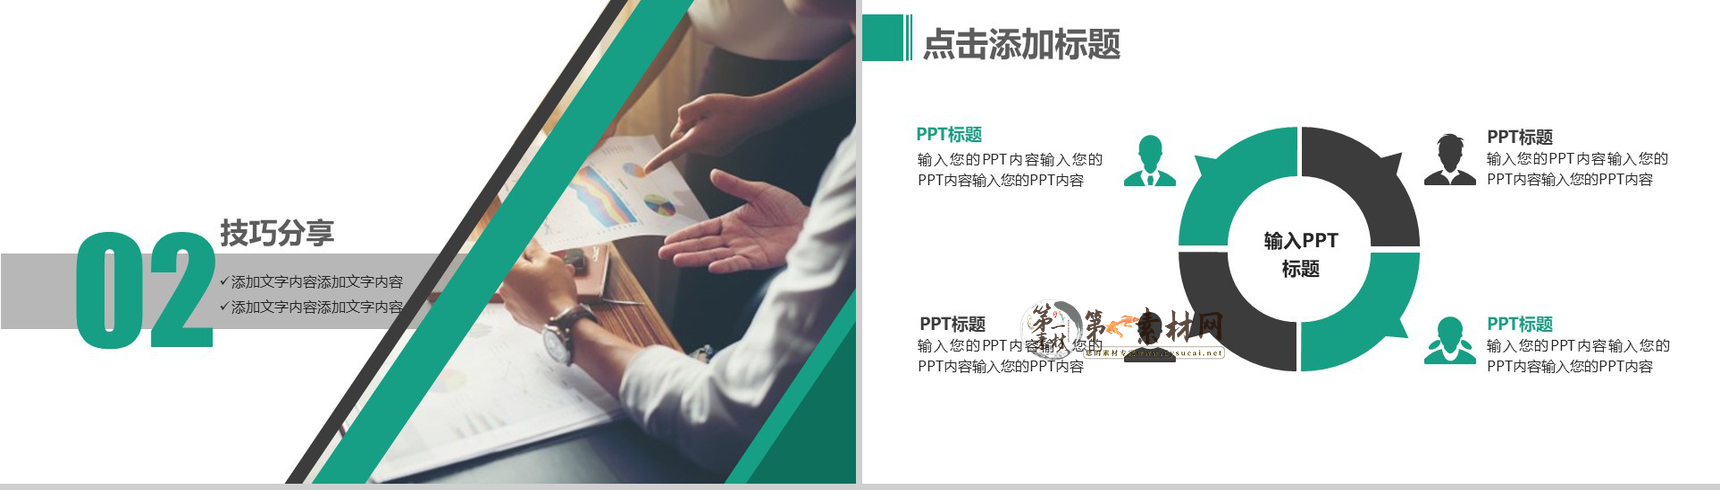 2019企业员工培训营销管理PPT模板-6